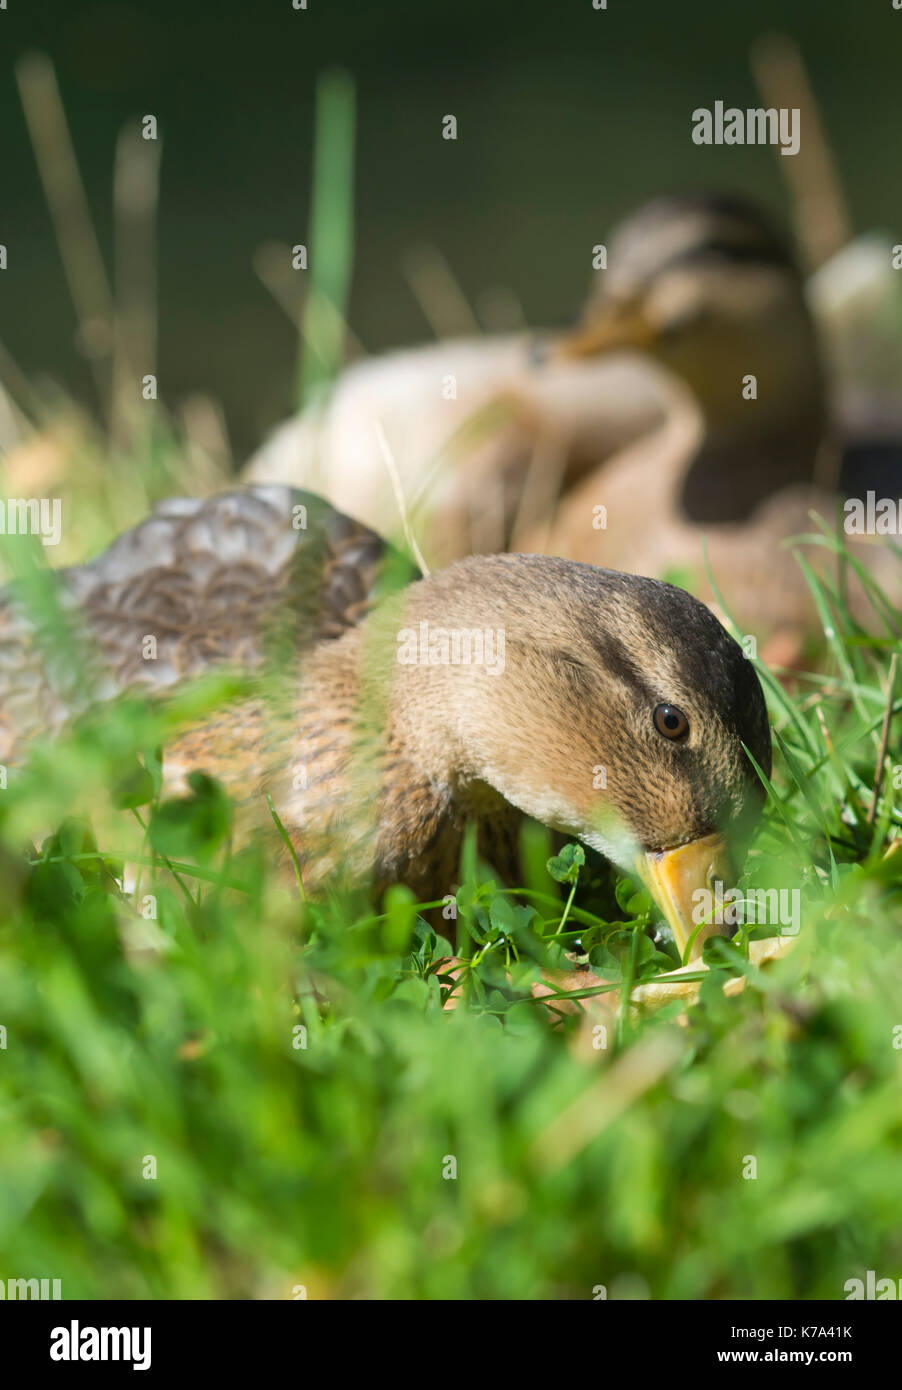 Mallard Duck hybrid, esatto ID sconosciuto, beccare a terra sull'erba da acqua a inizio autunno nel West Sussex, in Inghilterra, Regno Unito. Ritratto. Foto Stock